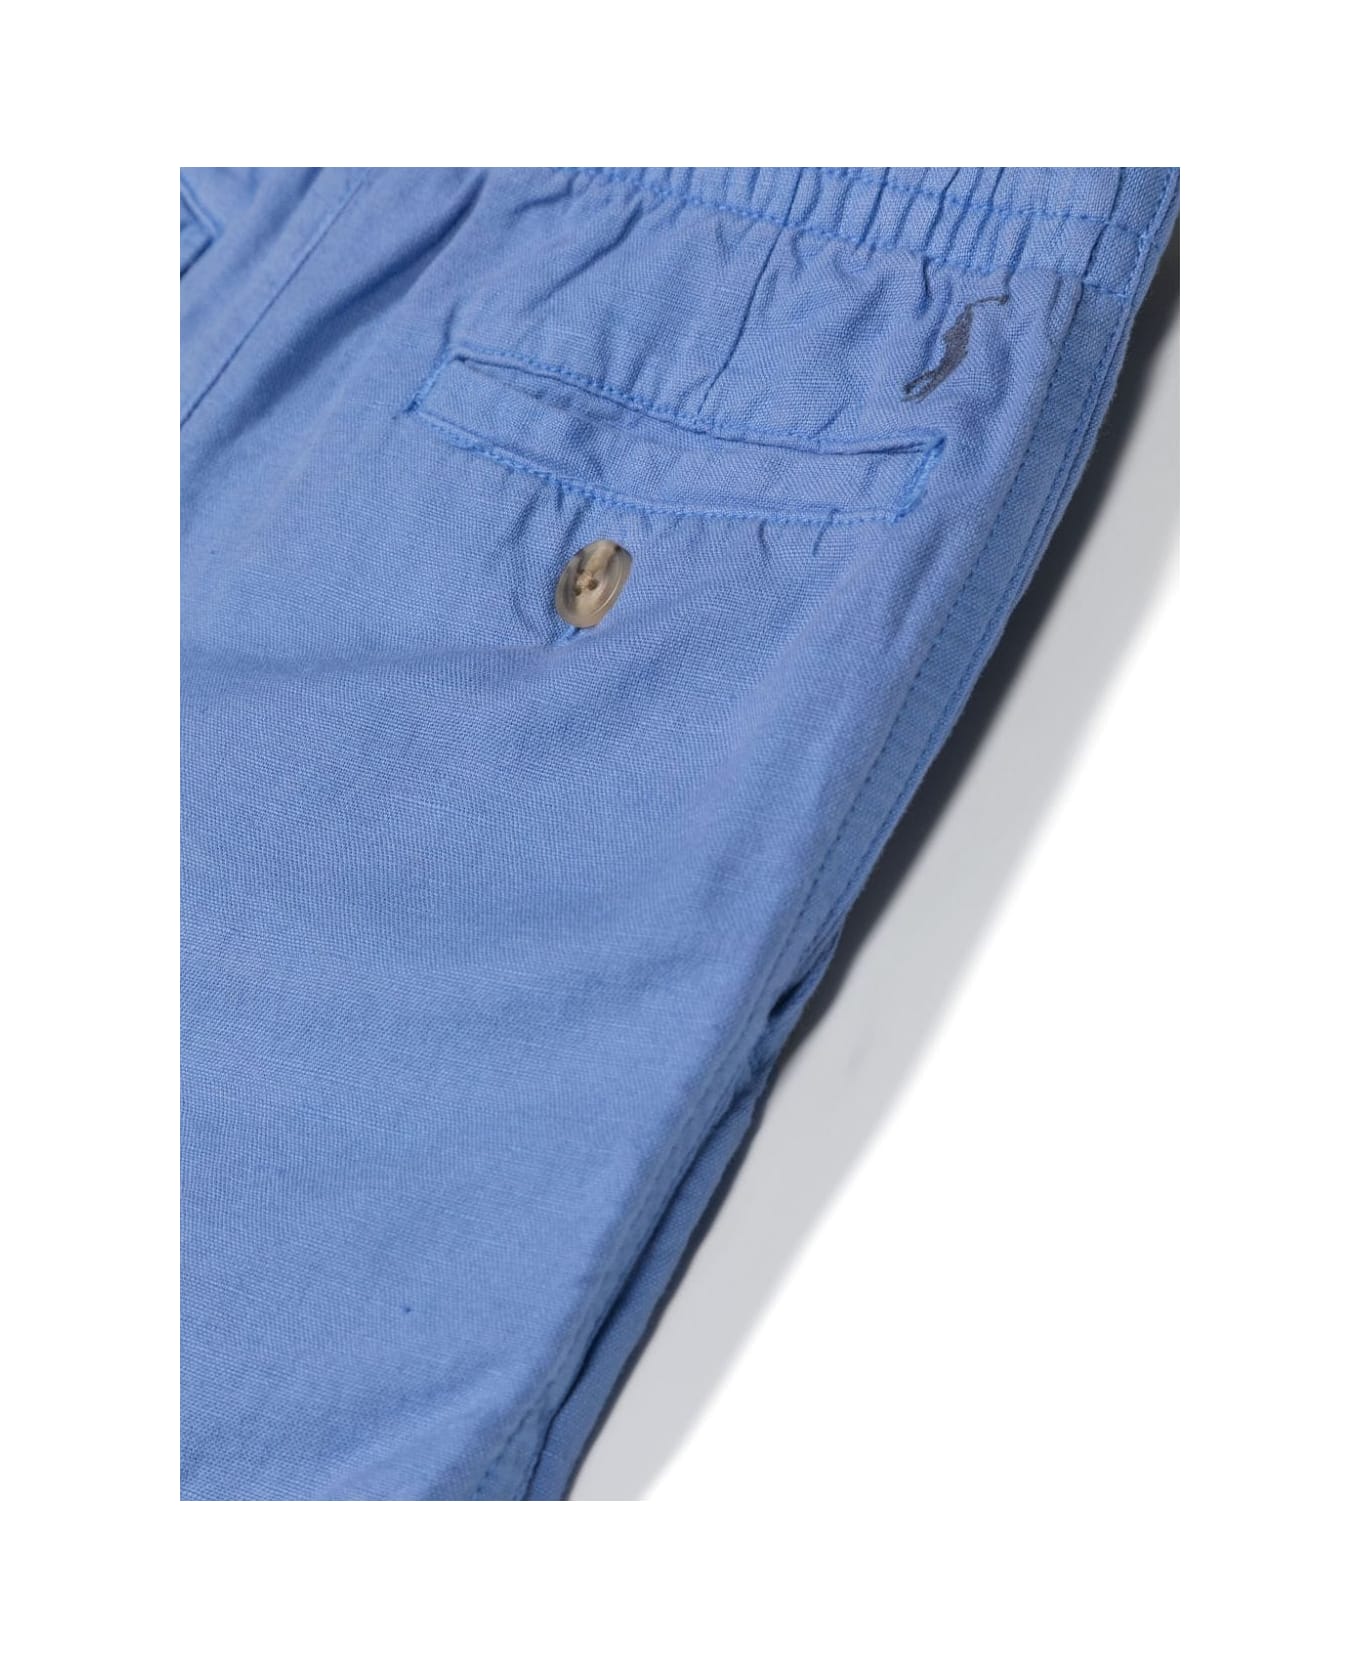 Ralph Lauren Cerulean Blue Linen And Cotton Bermuda Shorts - Blue